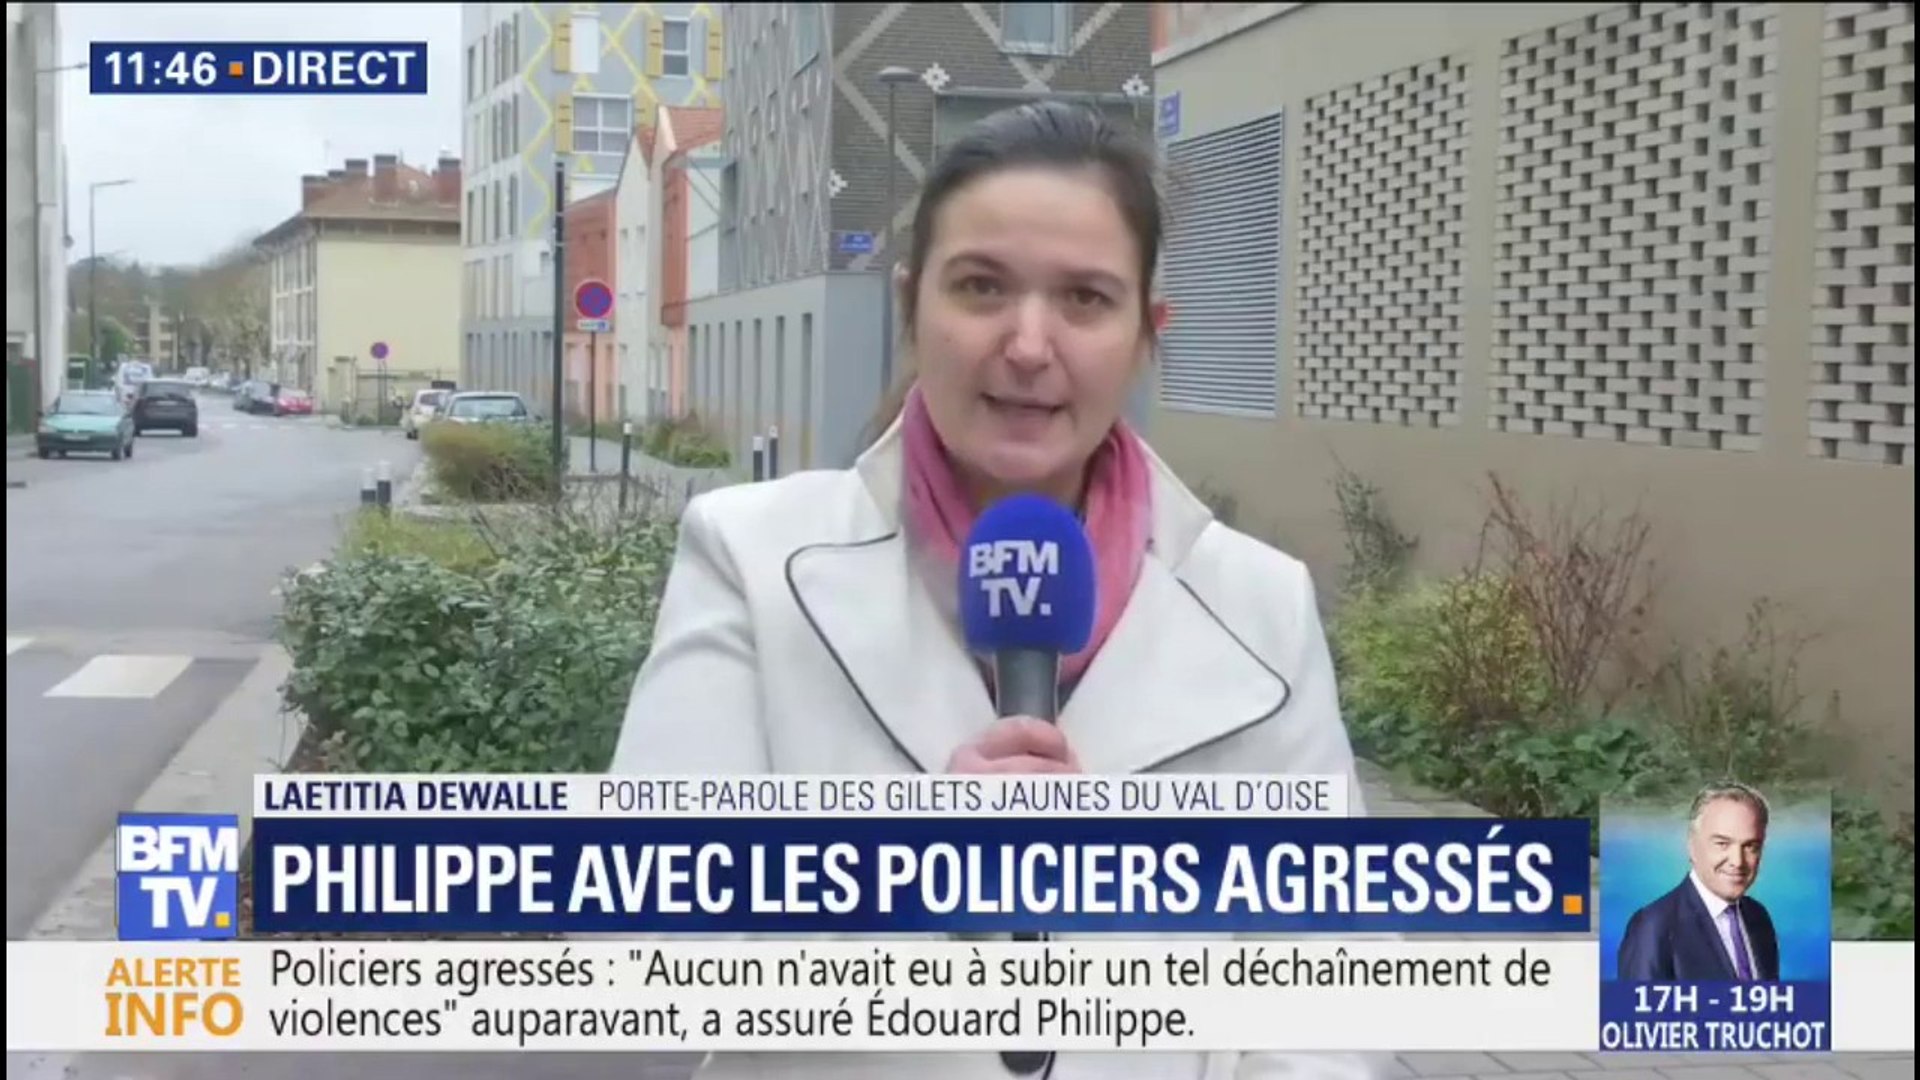 Laetitia Dewalle, porte-parole des gilets jaunes du Val d'Oise: "La  violence policière, nous l'avons subie aussi" - Vidéo Dailymotion